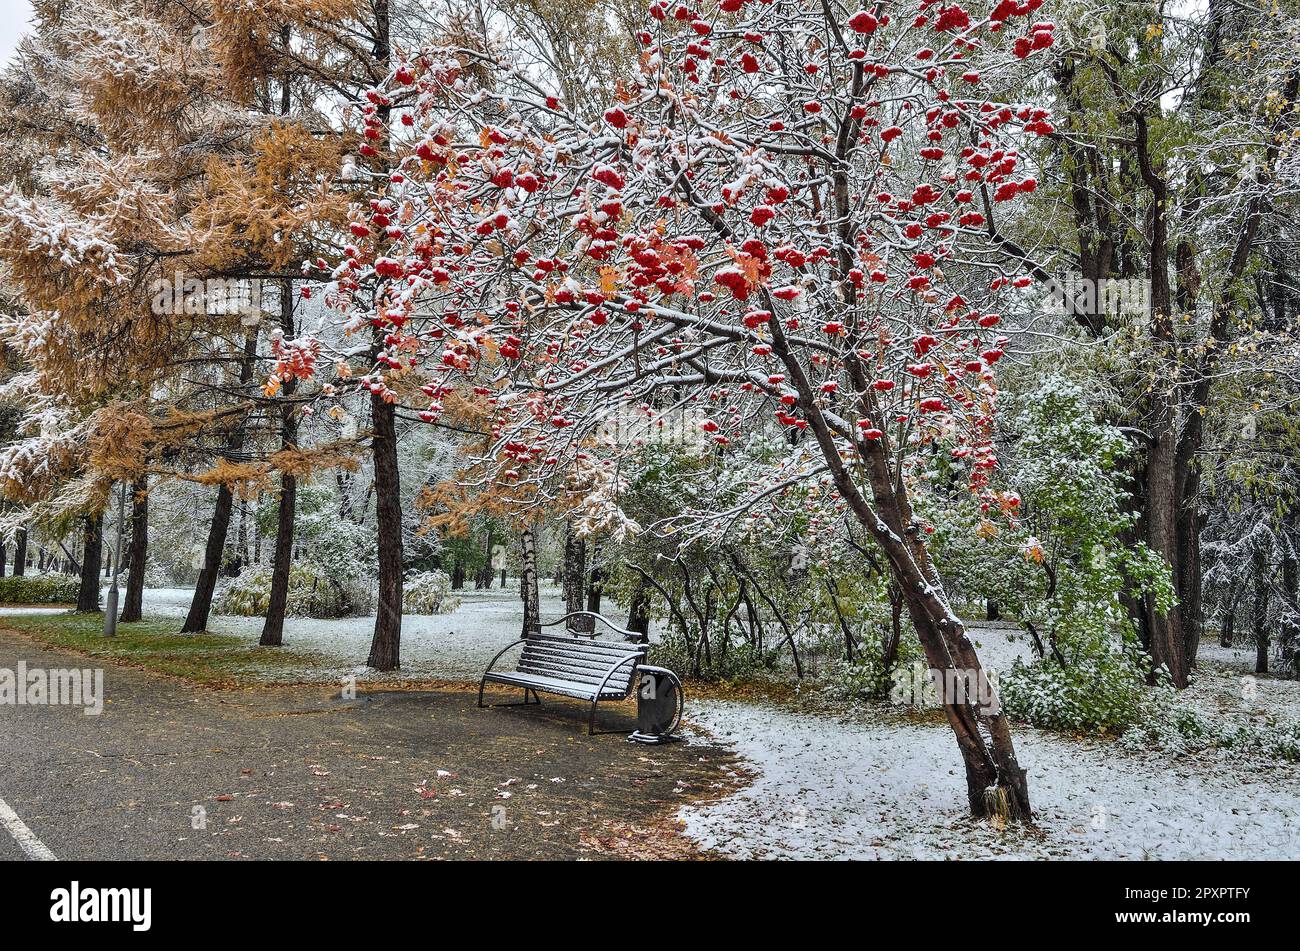 Erster Schneefall im Stadtpark - Spätherbst oder frühe Winterlandschaft. Goldene, flauschige Nadeln aus Lärche, Eberesche mit rotem Laub und Beeren, Büsche A Stockfoto